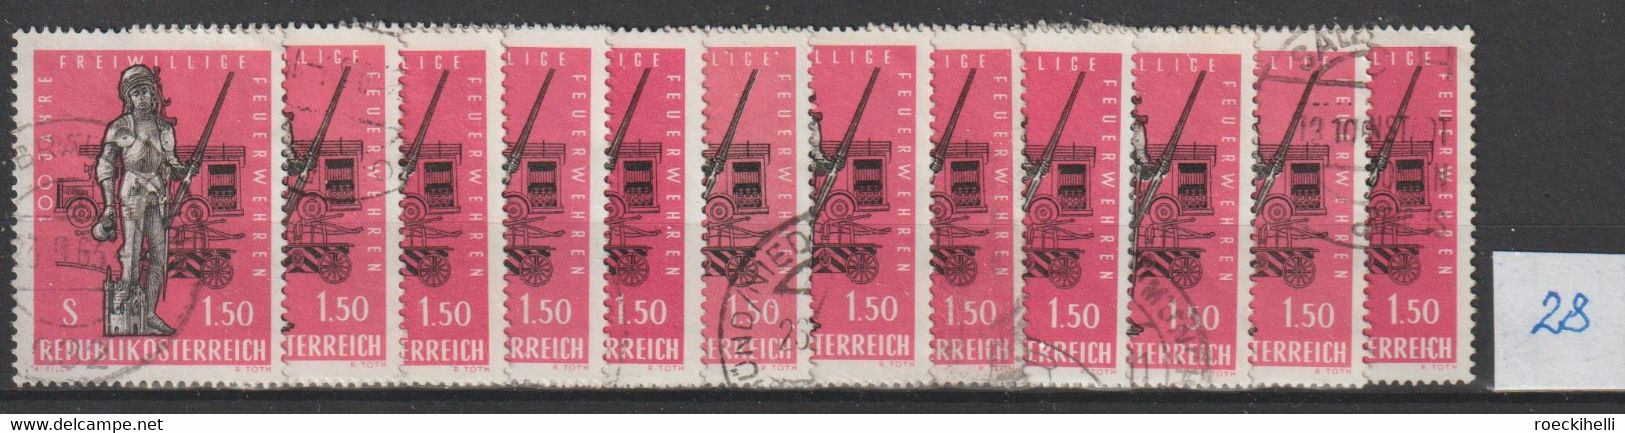 1963  -  ÖSTERREICH - SM "100 Jahre Freiwillige Feuerwehren" S 1,50 dkl'rosa - o gestempelt -  s.Scan (1161o 06- 28  at)